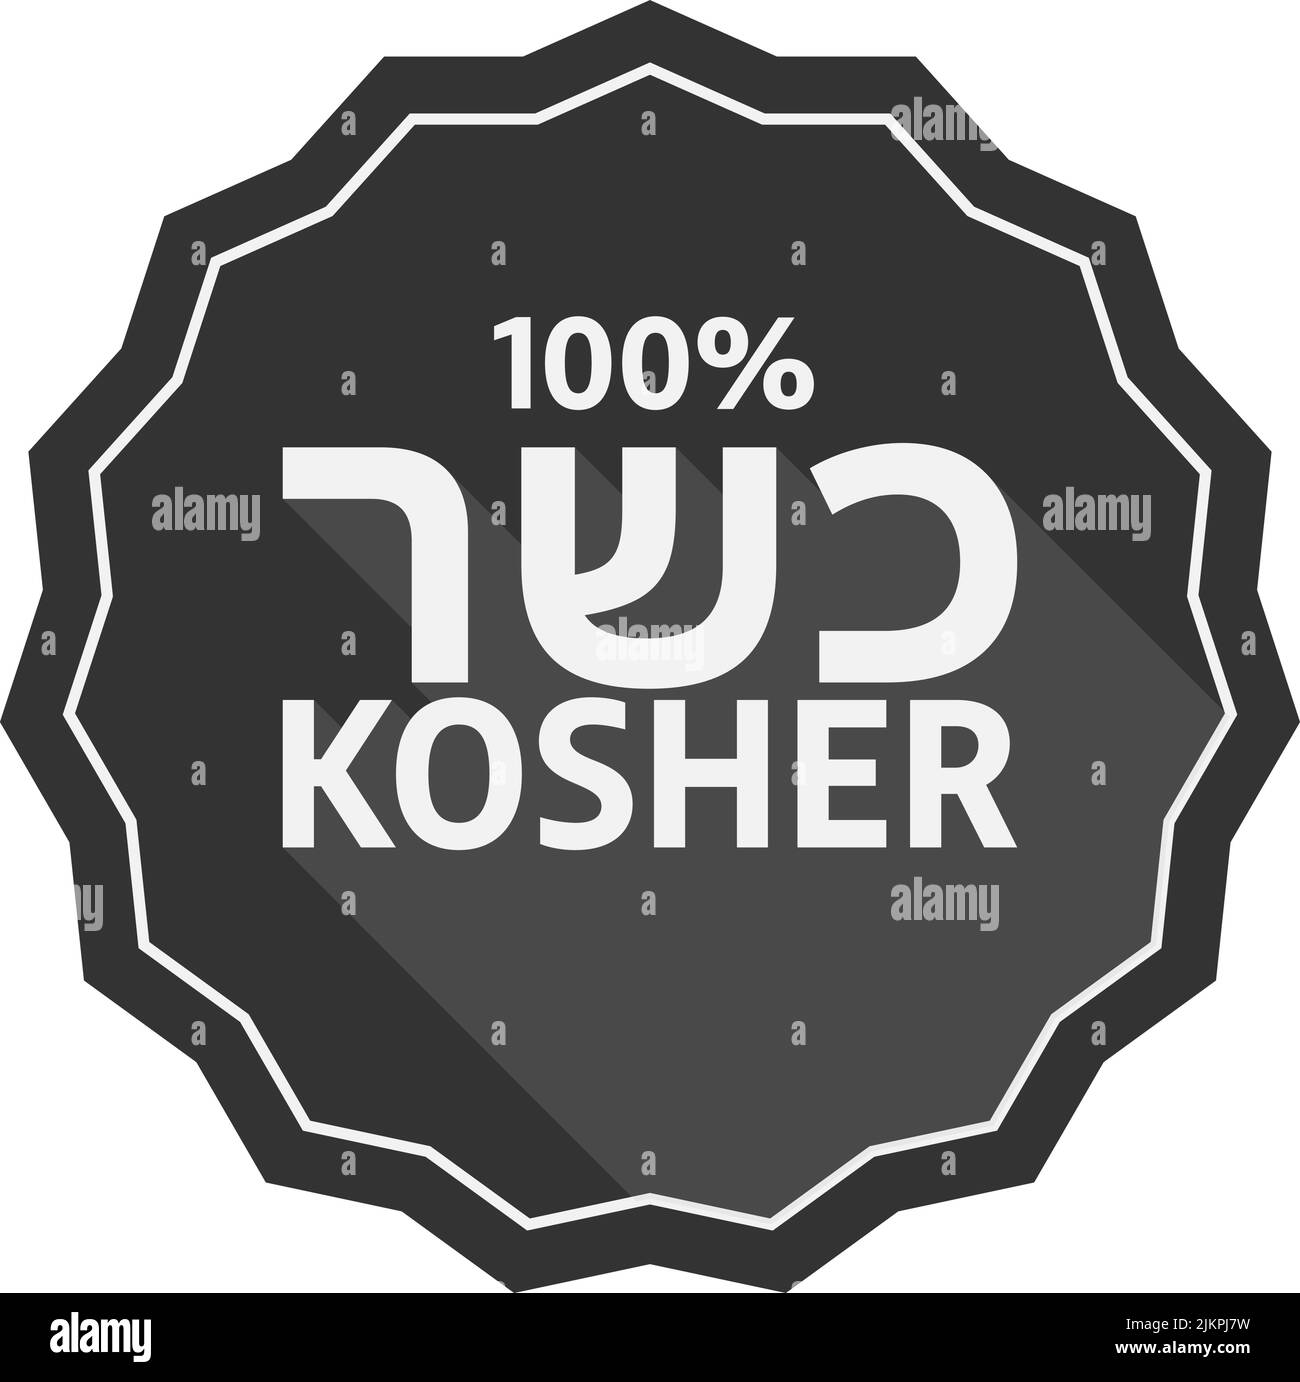 etichetta kosher al 100% con scrittura ebraica, illustrazione vettoriale Illustrazione Vettoriale